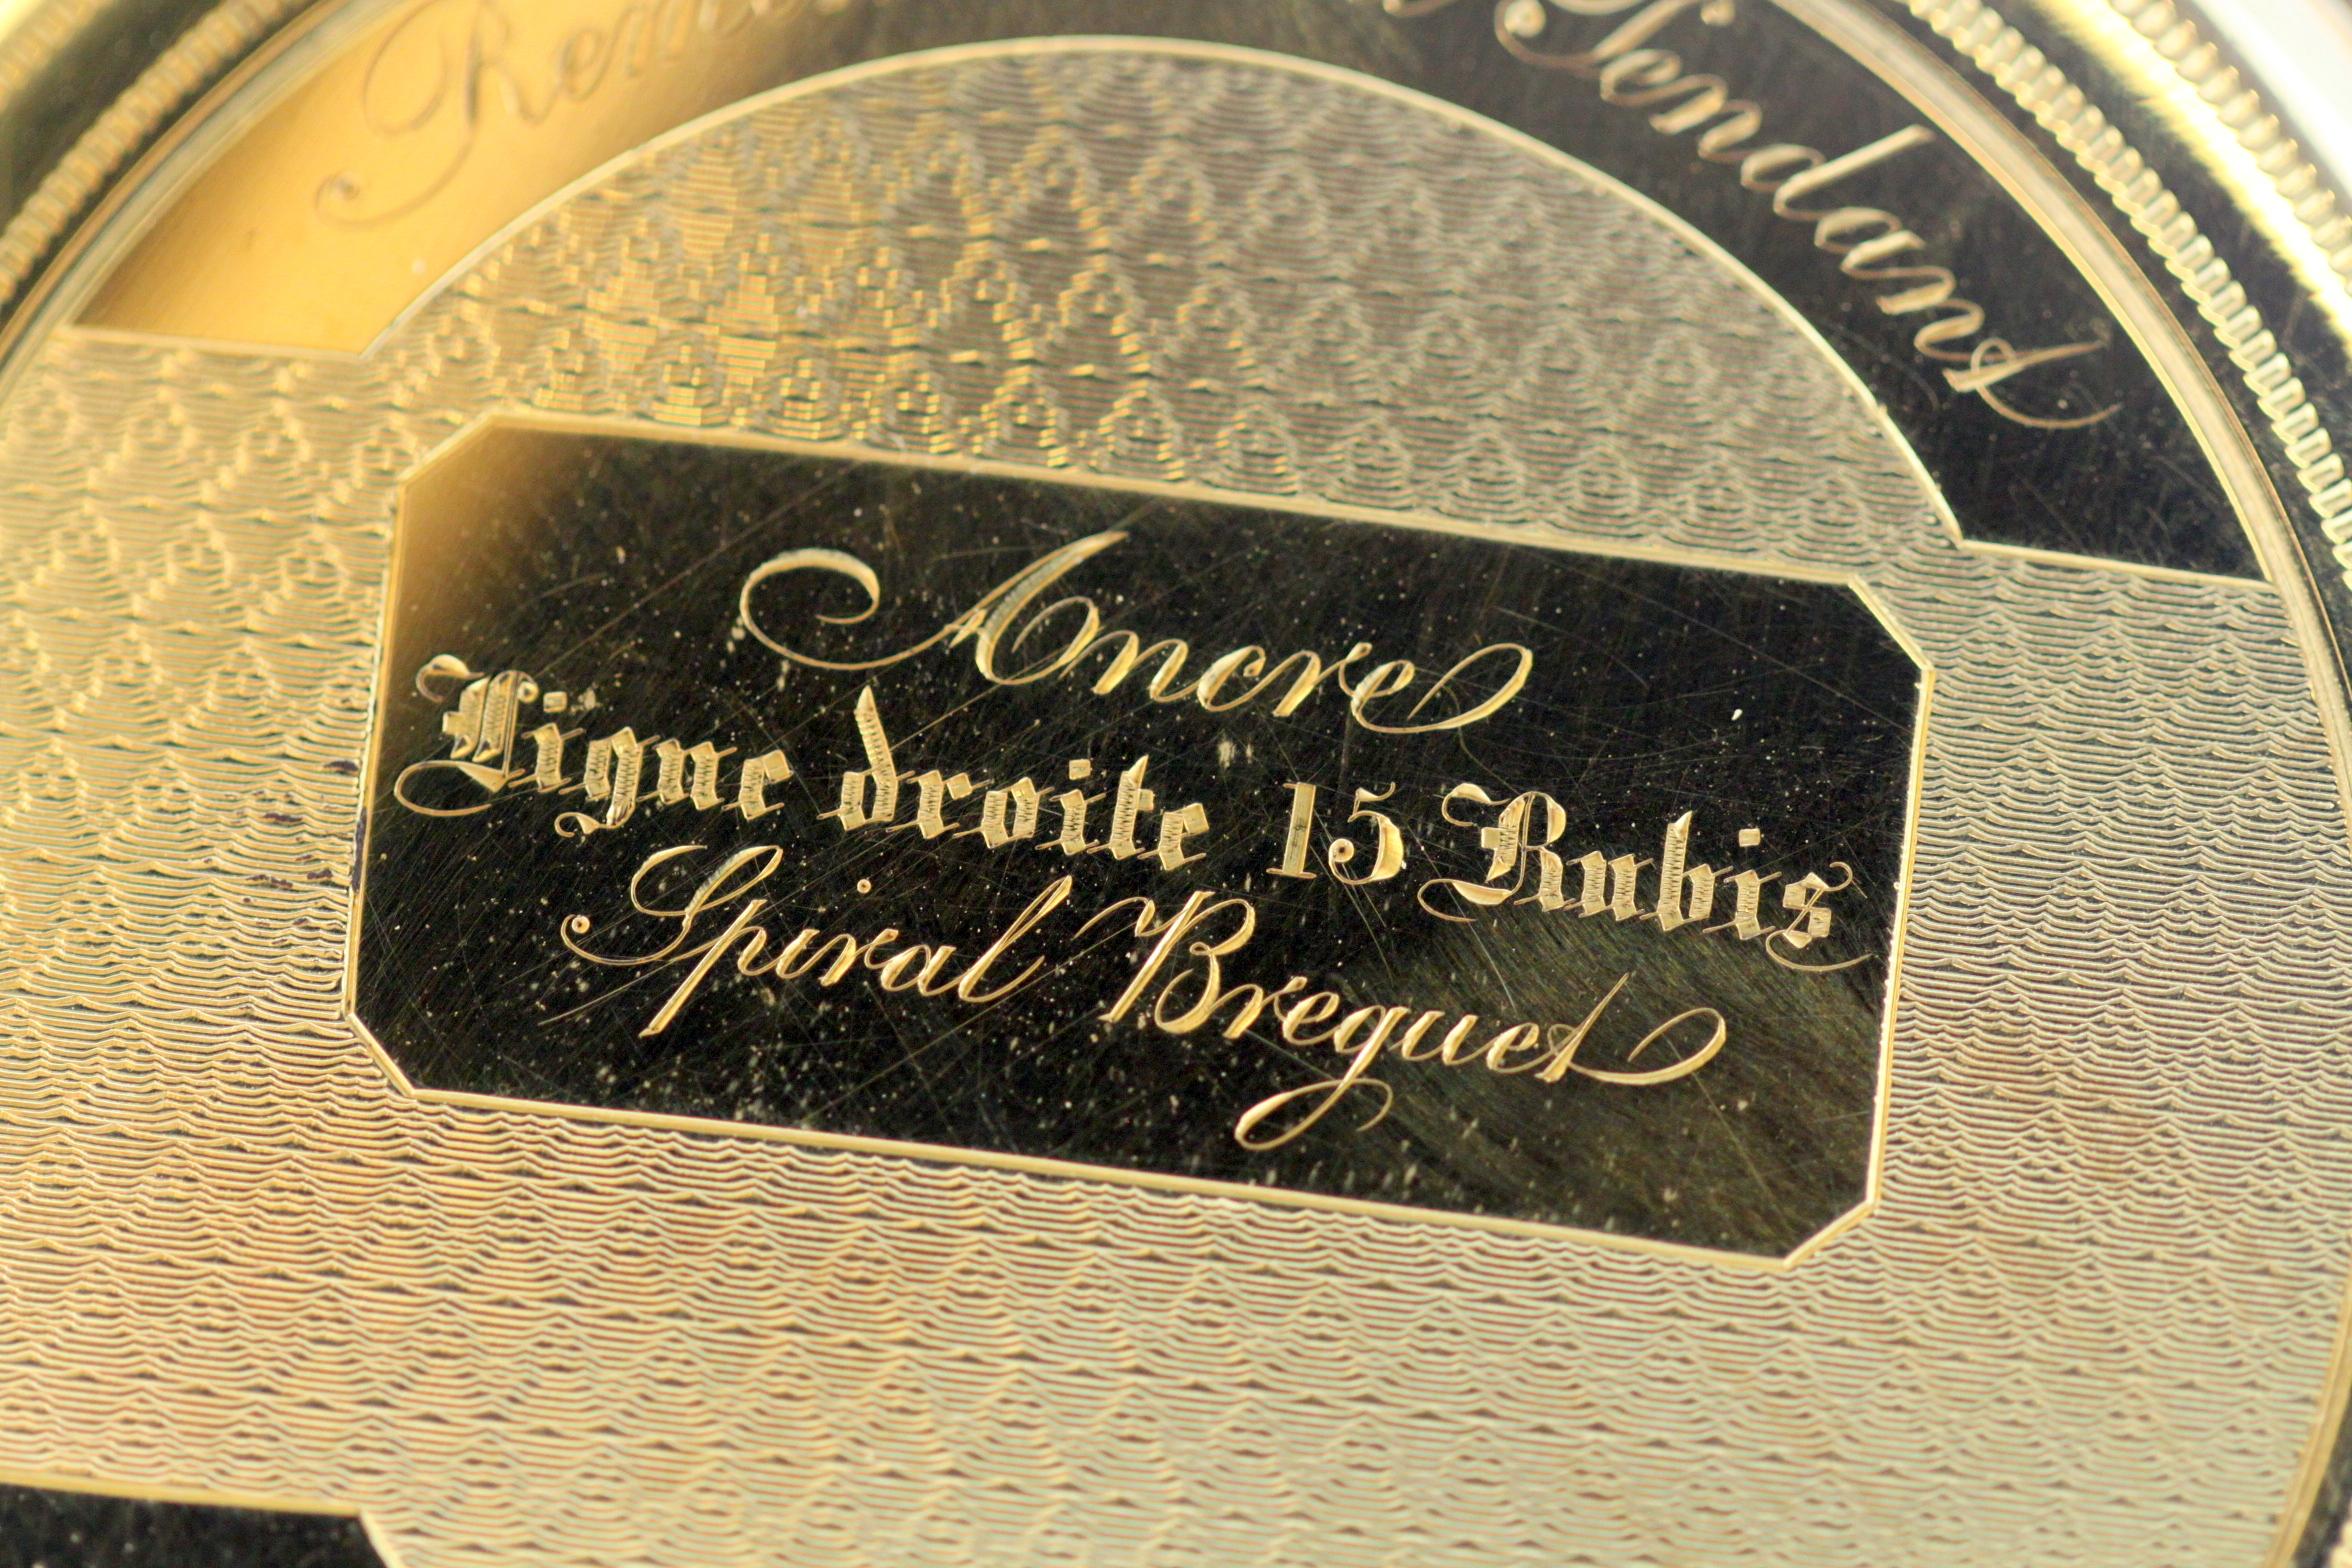 Antique Swiss 18 Karat Yellow Gold Pocket Watch by Amore Spiral Breguet, 1920s 7